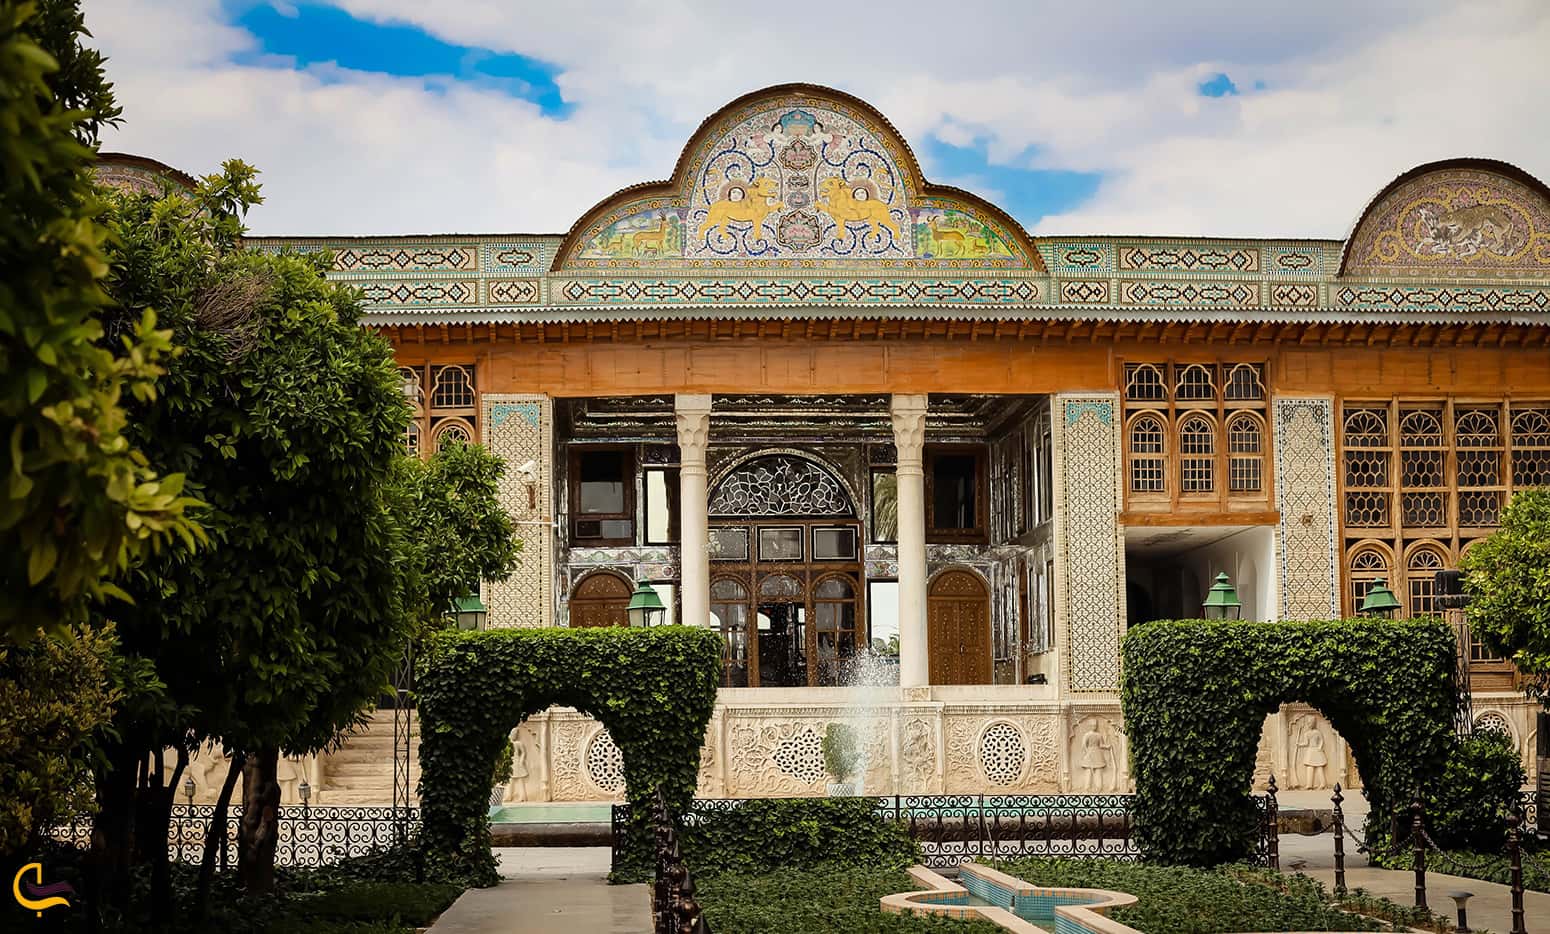 تصویر بسیار زیبا از نمای کلی ساختمان در باغ نارنجستان قوام شیراز